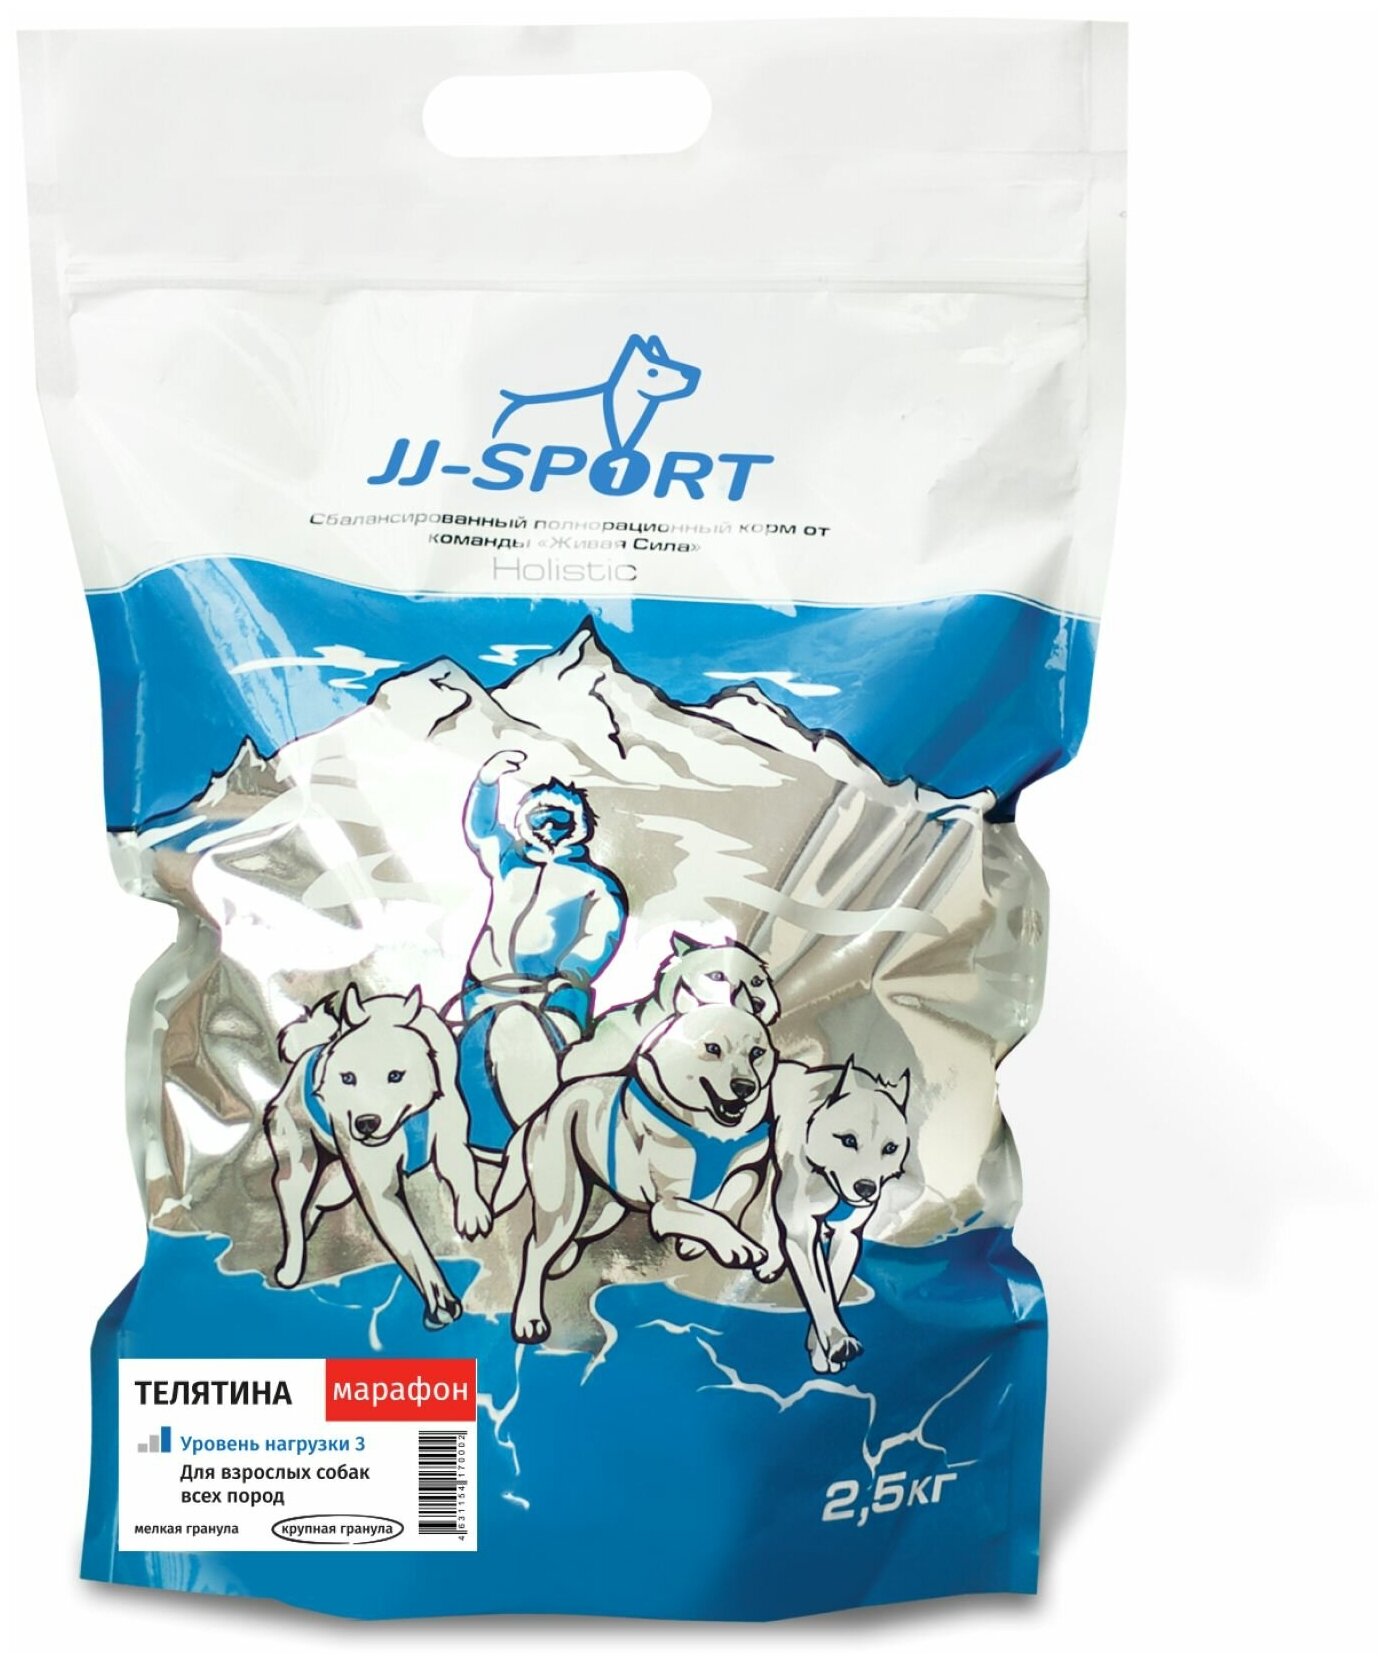 JJSPORT_ЖИВАЯ сила Марафон корм для собак всех пород с высокими нагрузками с телятиной и лососем, Крупная гранула (2,5 кг)